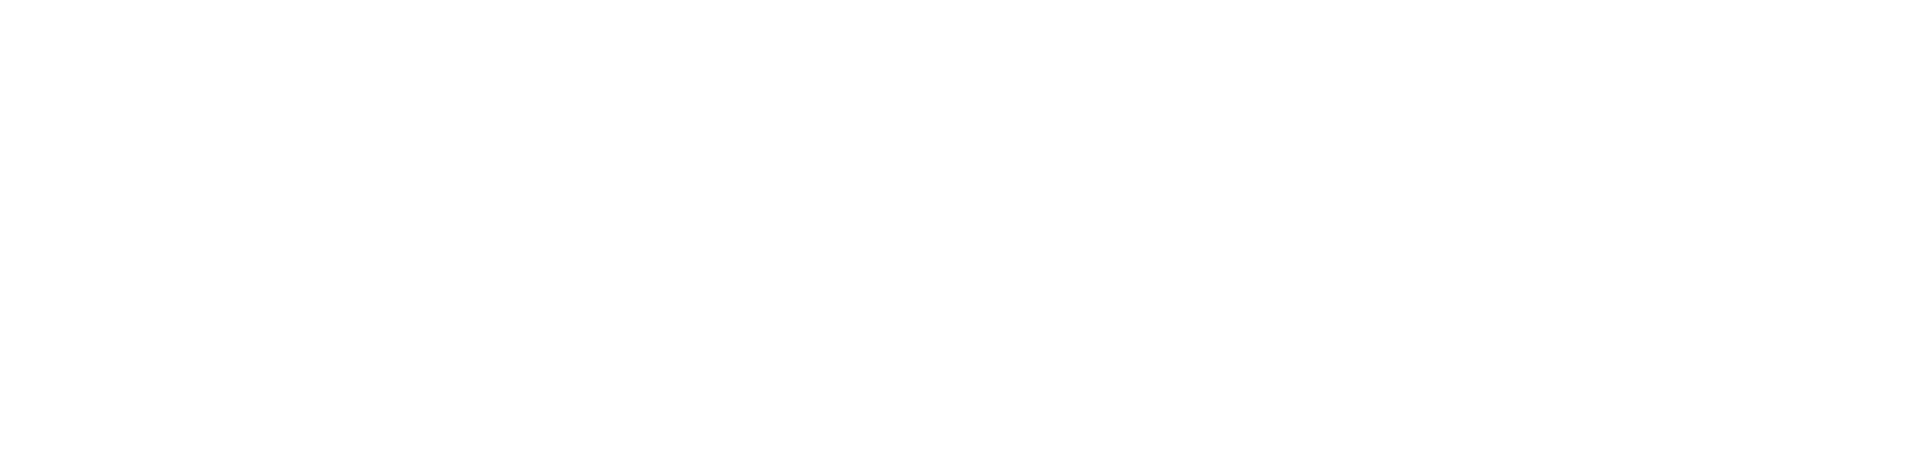 texas freedom wholesale white full logo name